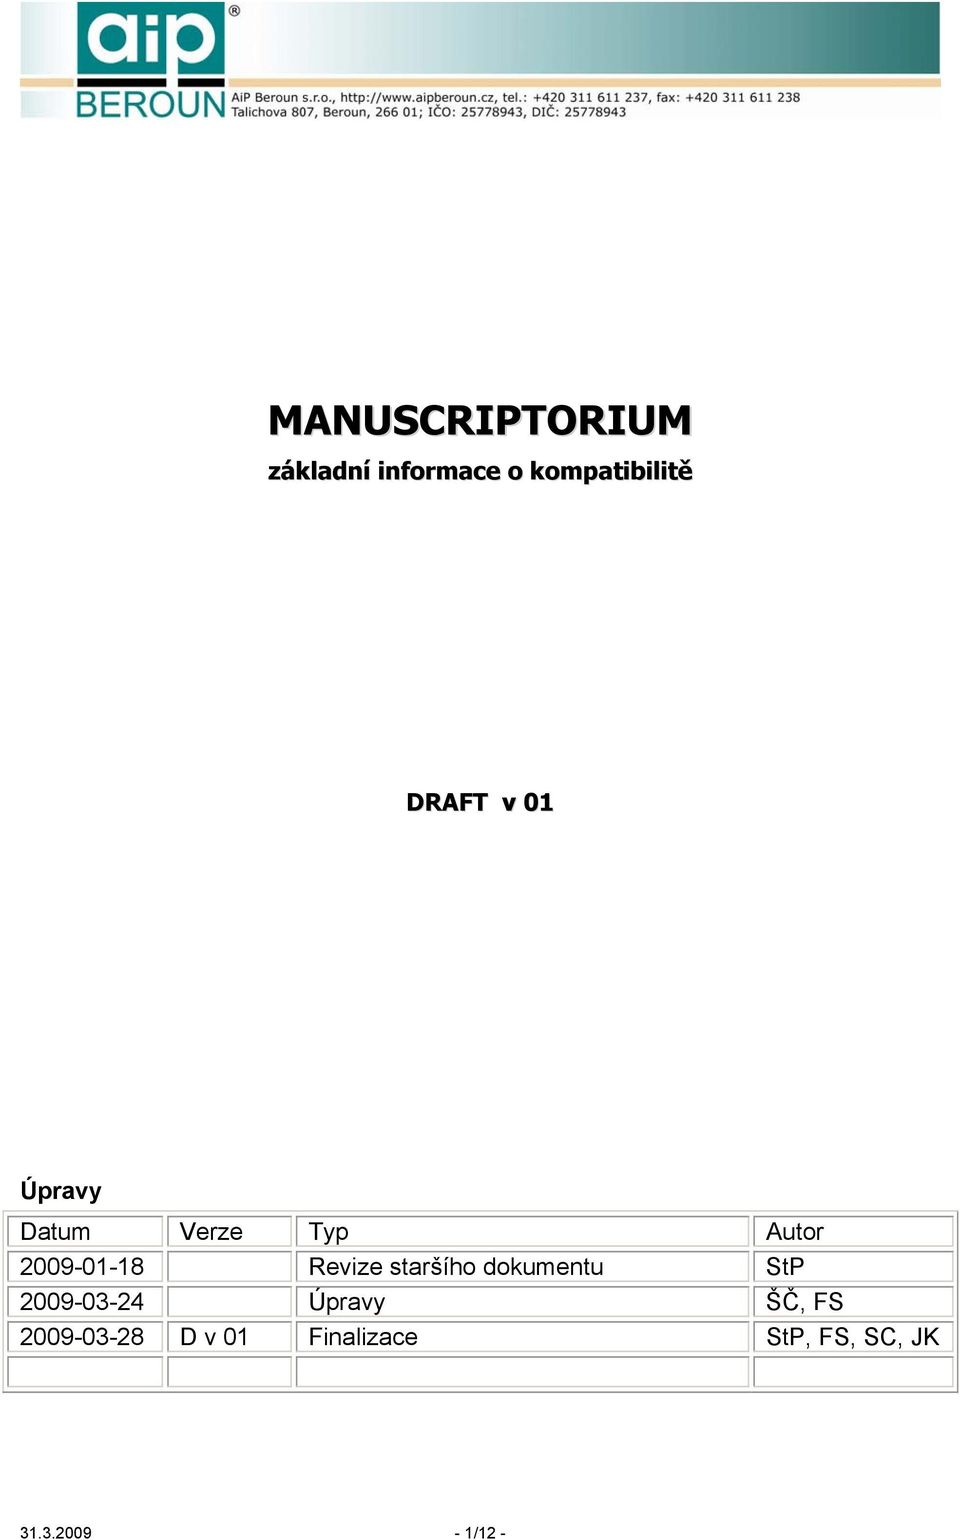 Revize staršího dokumentu StP 2009-03-24 Úpravy ŠČ, FS